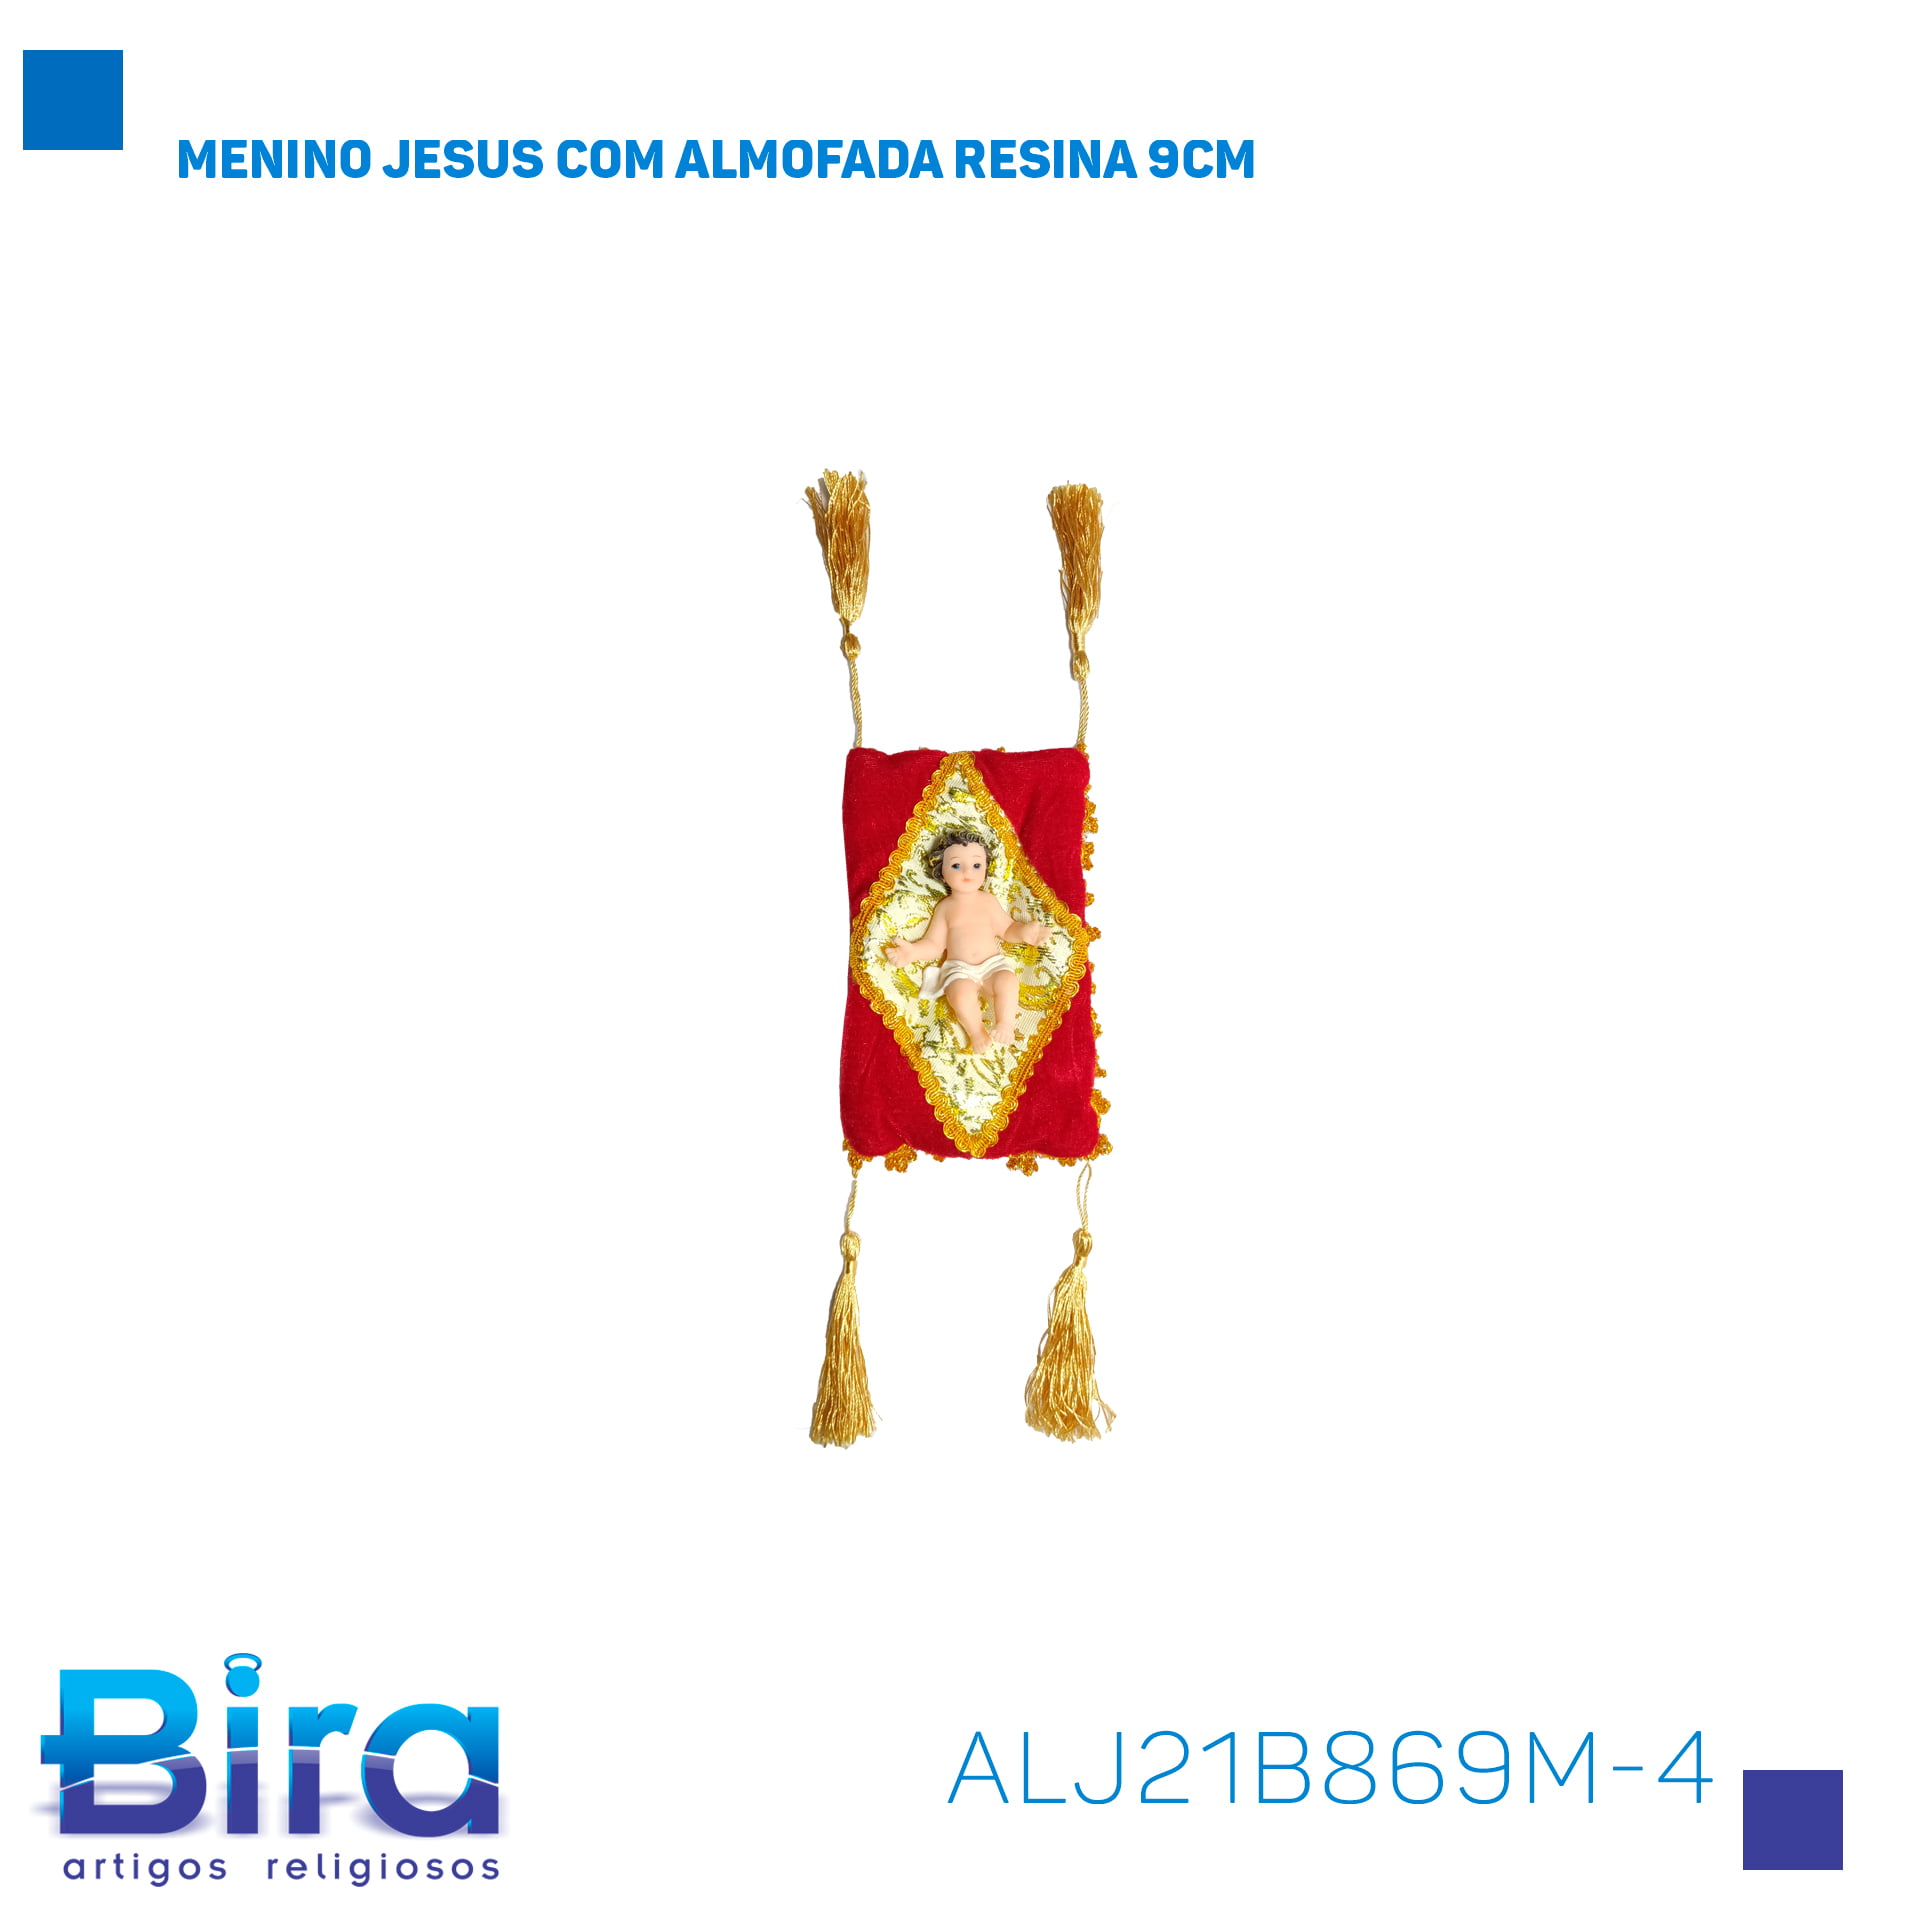 Bira Artigos Religiosos - MENINO JESUS COM ALMOFADA RESINA 9CM - Cód. ALJ21B869M-4